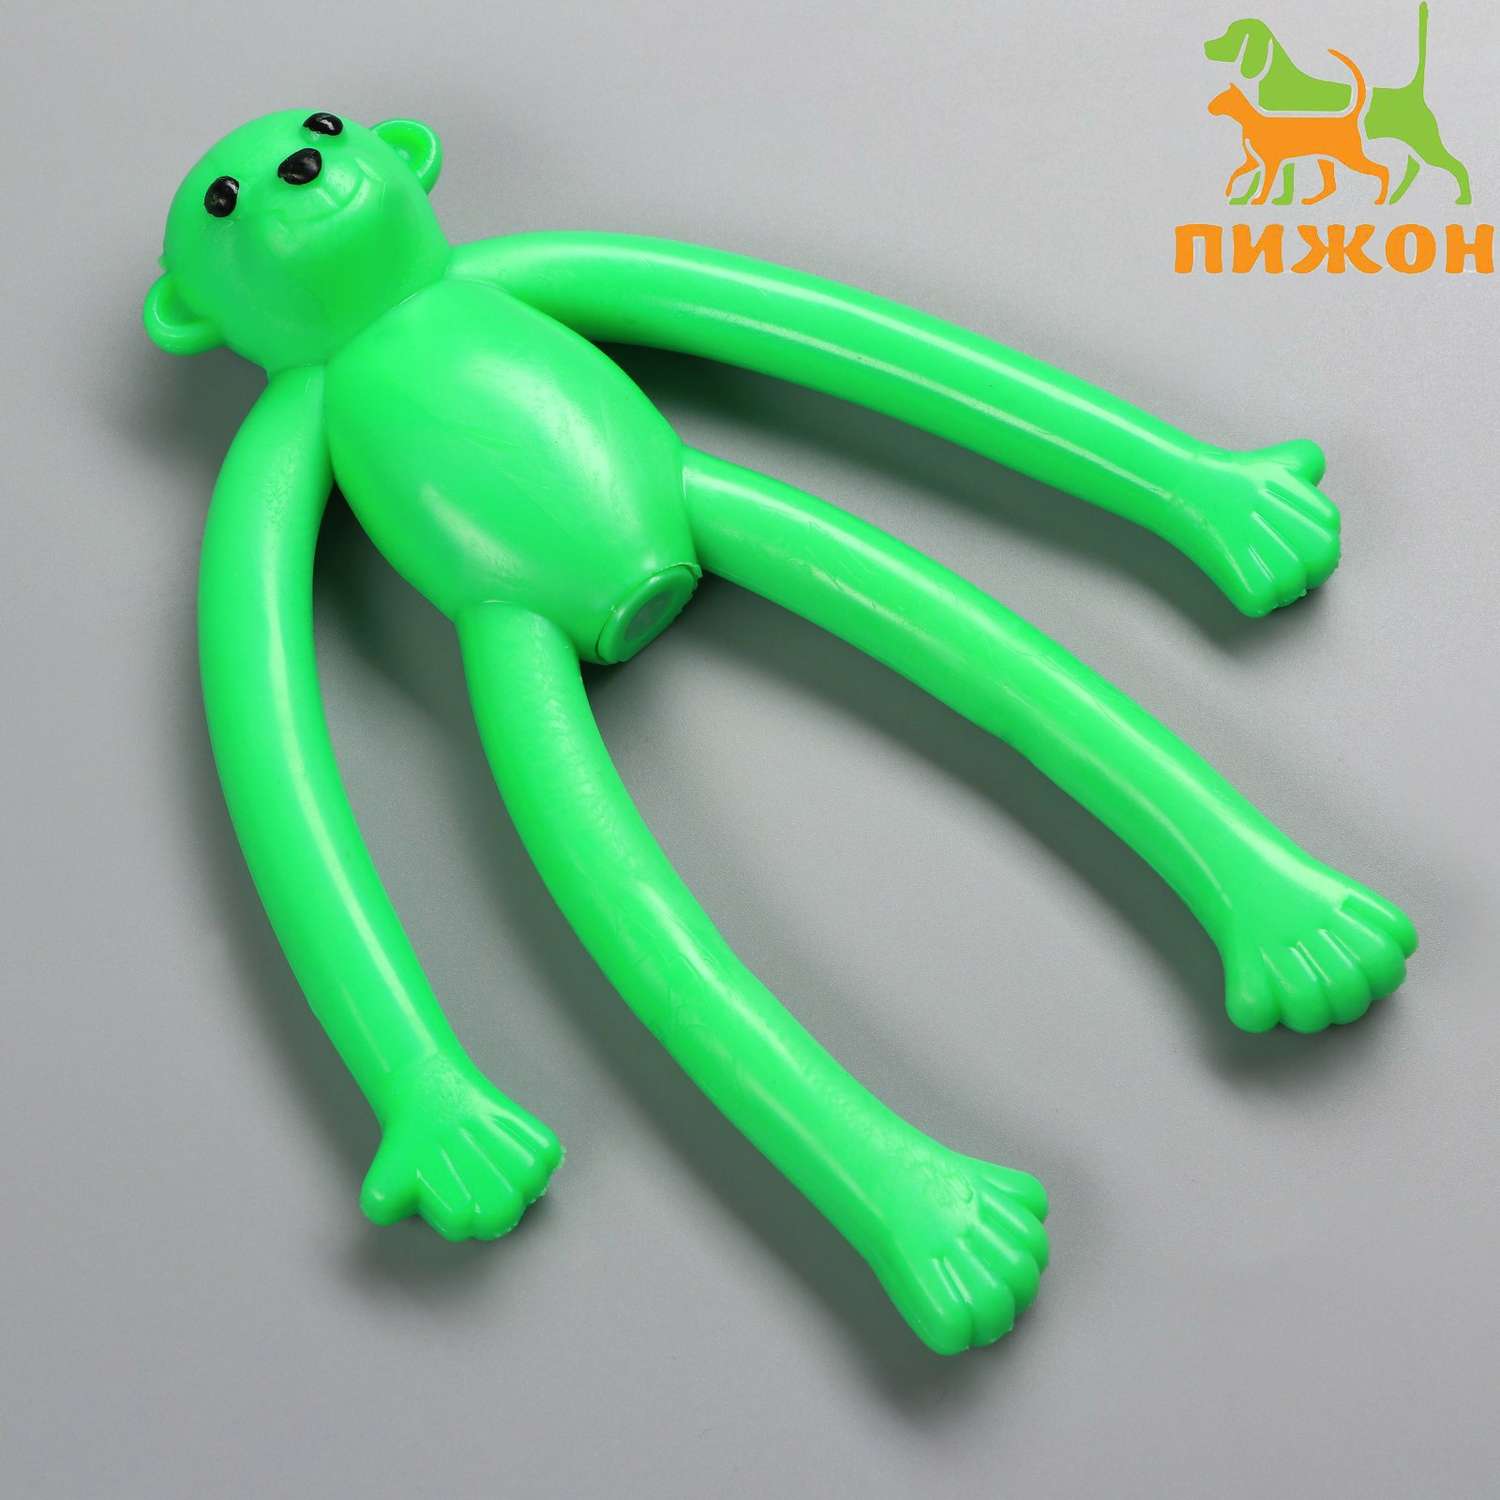 Игрушка Пижон для собак «Обезьяна» с пищалкой 19.5 см силикон зелёная - фото 1